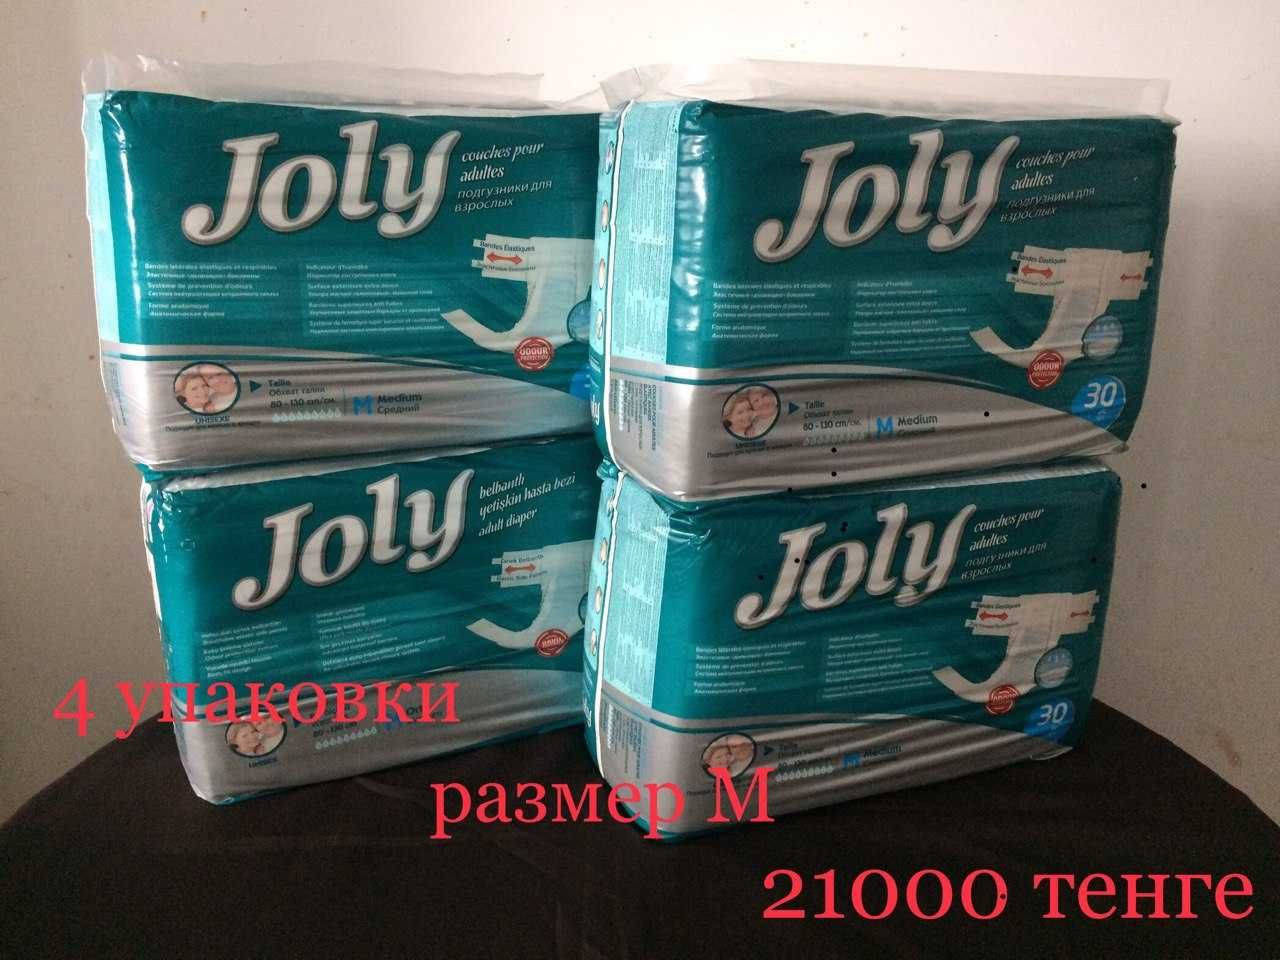 Продам памперсы Joly размеры М и L по 4 упаковки. Самовывоз.